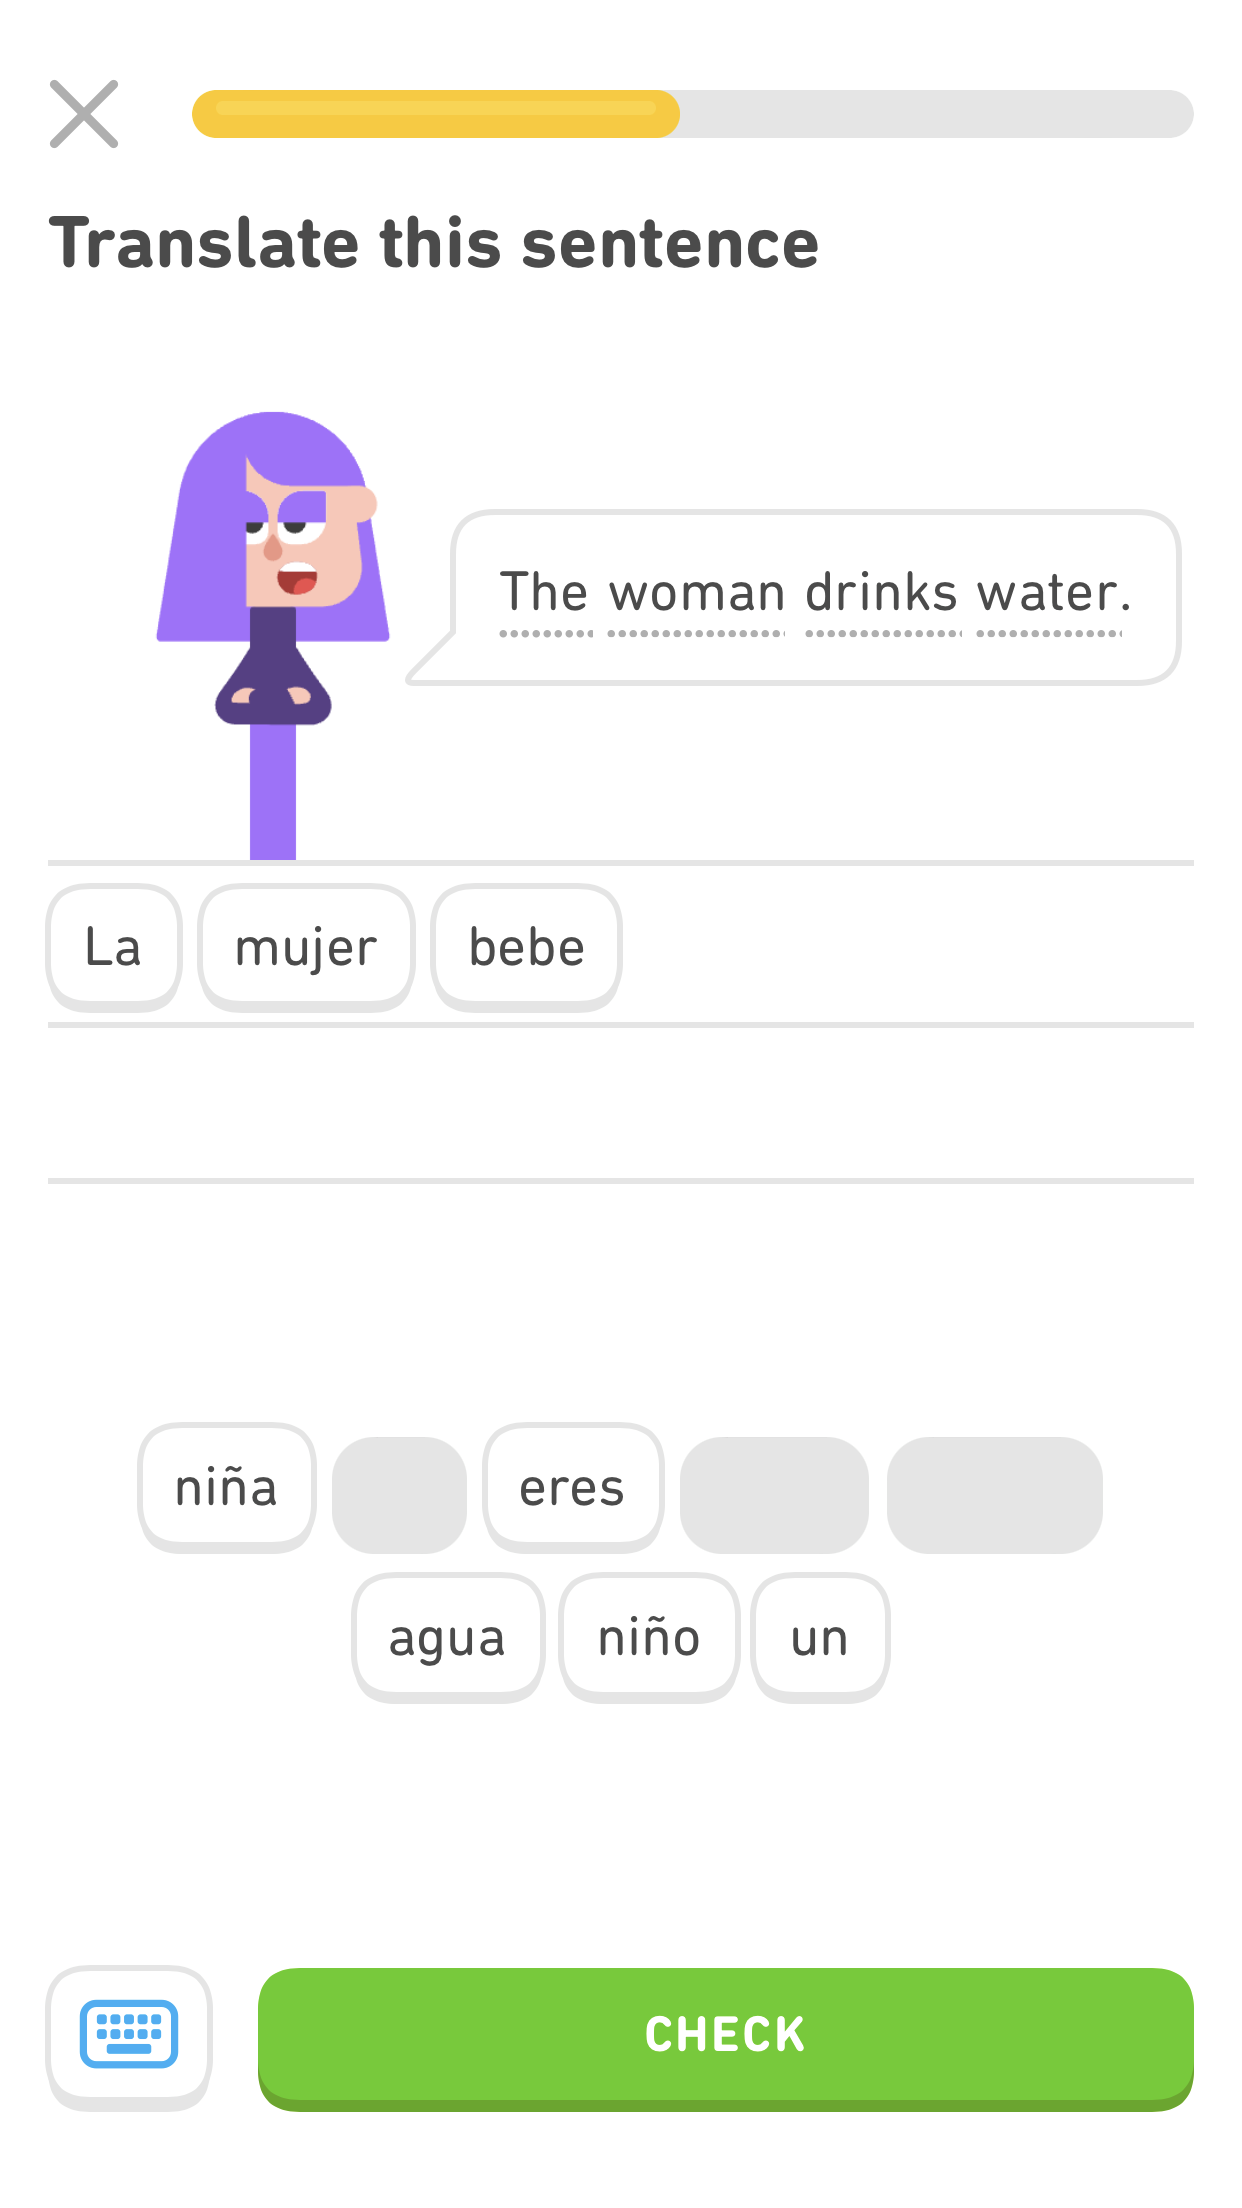 captura de pantalla de un ejercicio con la oración en inglés “The woman drinks water”. El equivalente en español está formado parcialmente abajo por las palabras “La mujer bebe”.